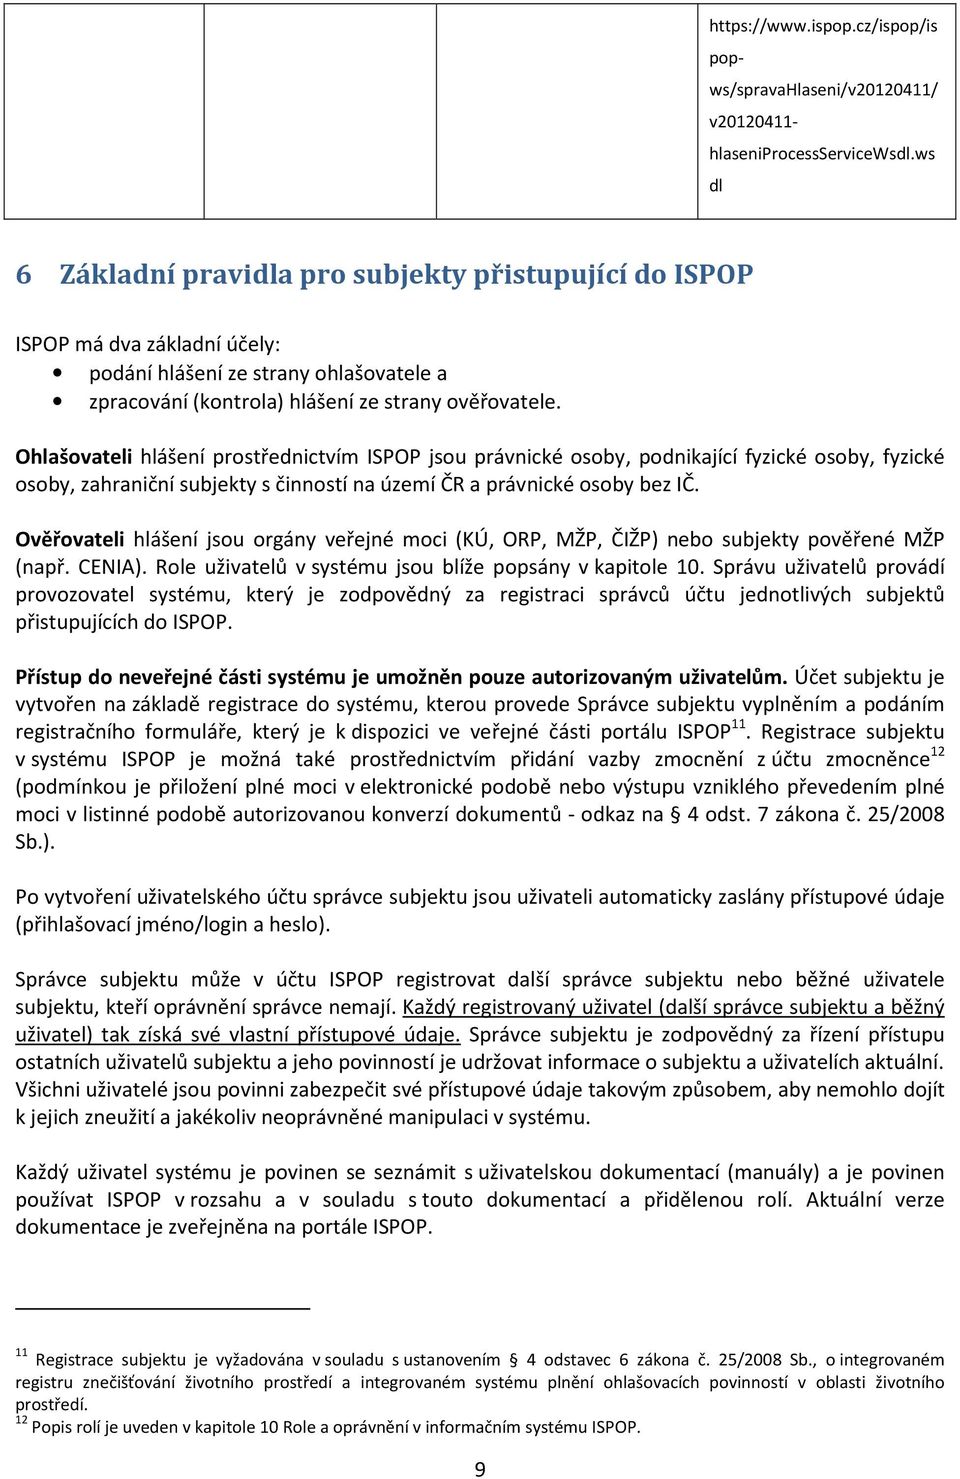 Ohlašovateli hlášení prostřednictvím ISPOP jsou právnické osoby, podnikající fyzické osoby, fyzické osoby, zahraniční subjekty s činností na území ČR a právnické osoby bez IČ.